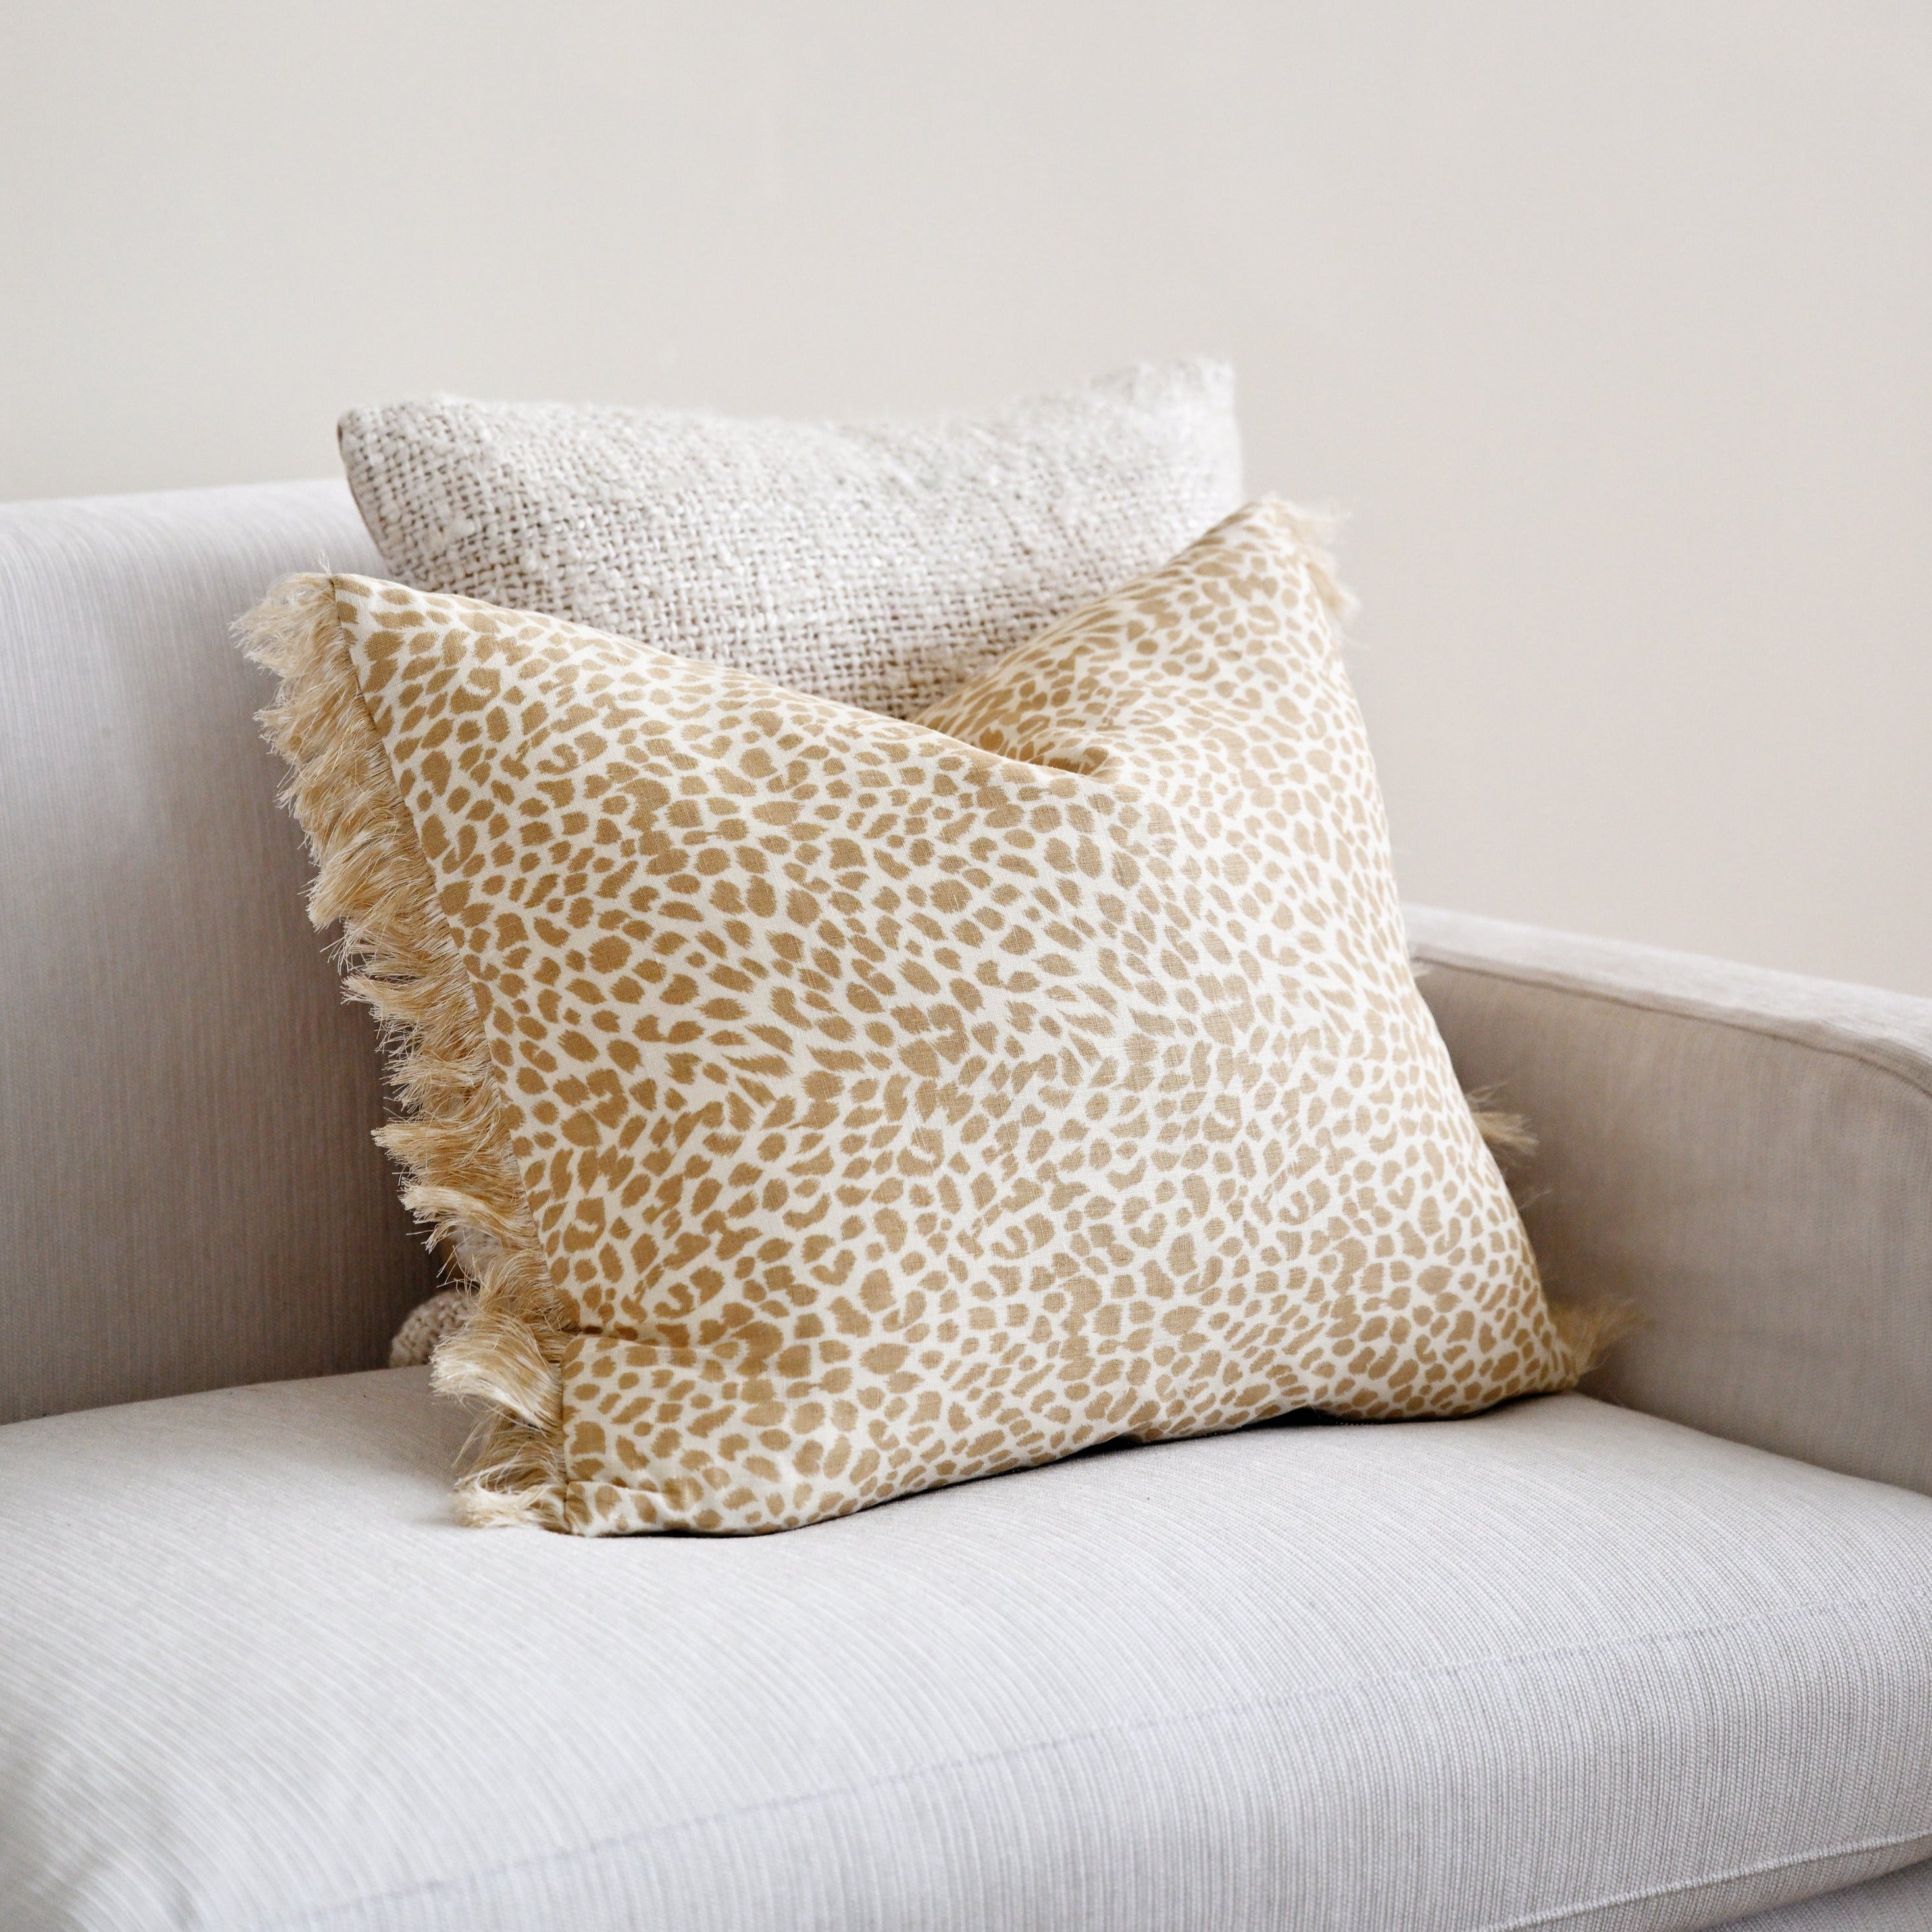 Awi Cheetah Lumbar Cushion - 50cm x 40cm